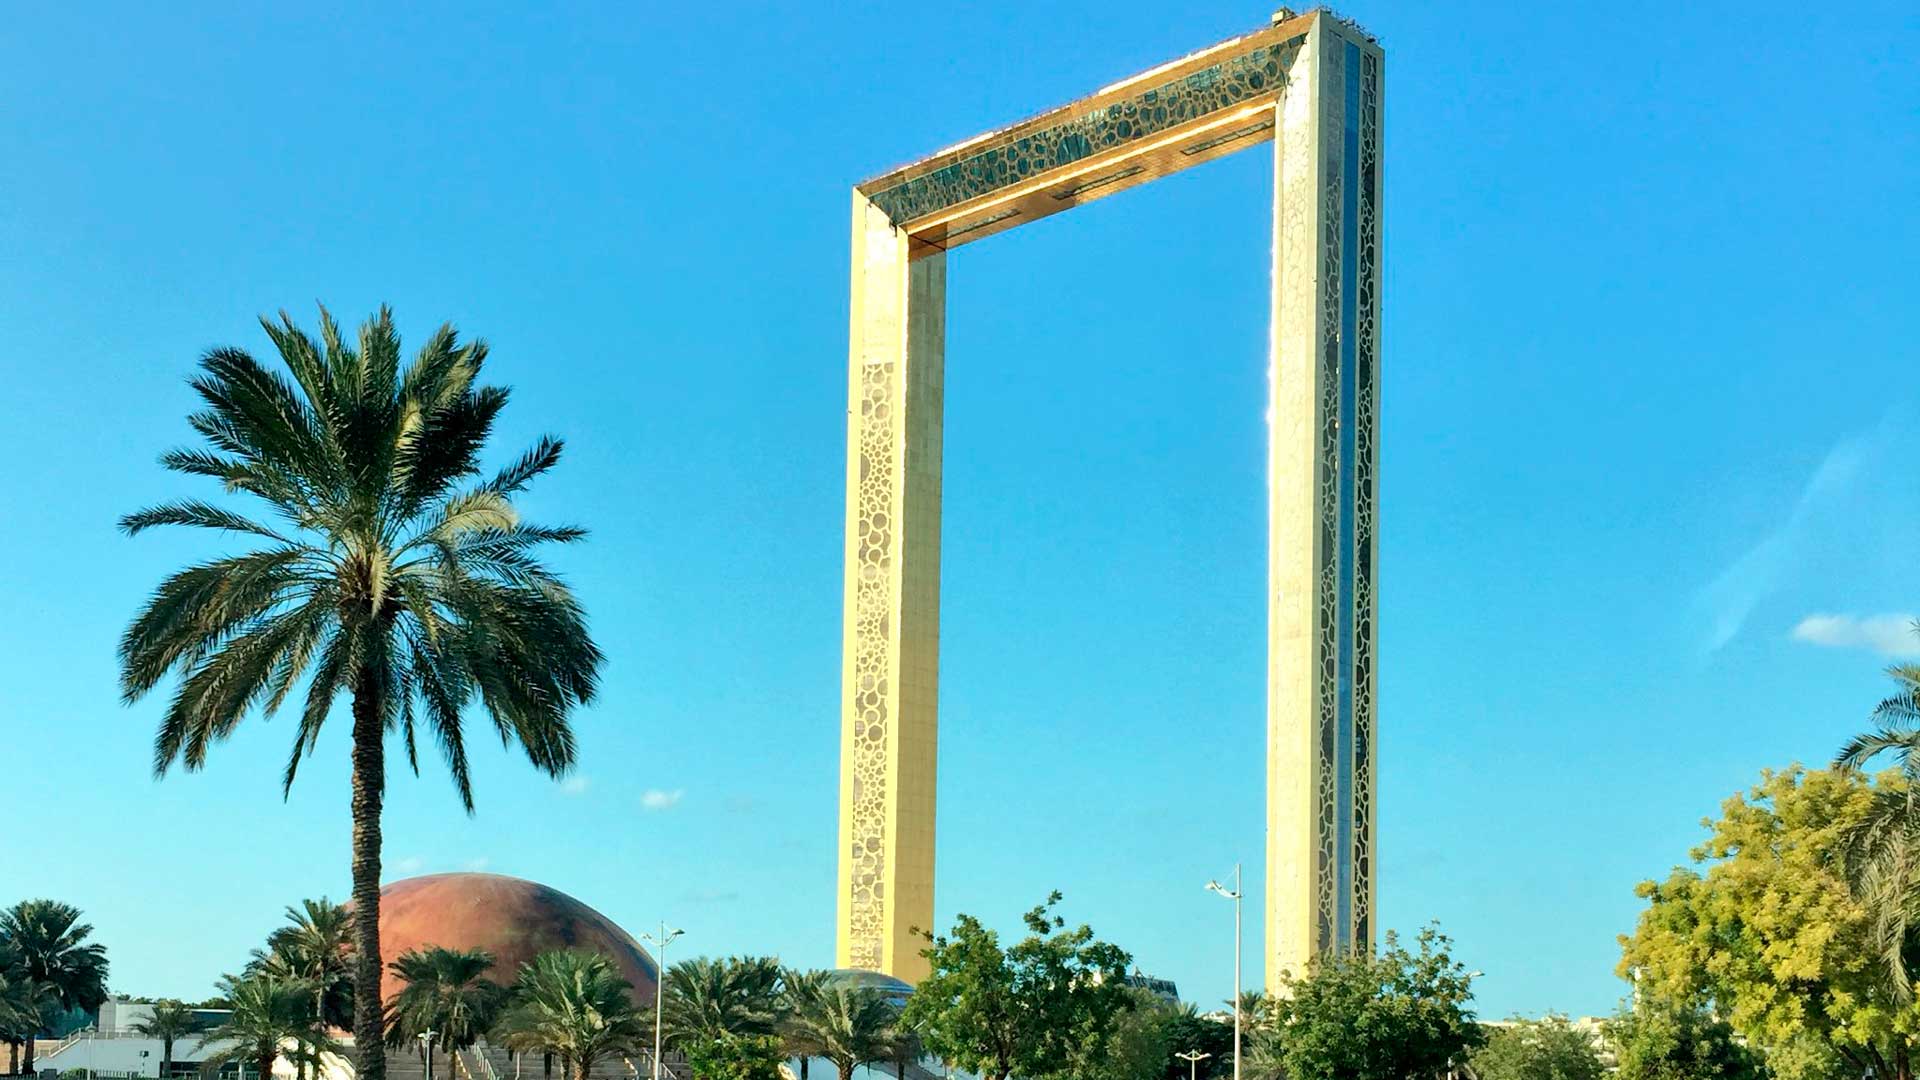 El nuevo monumento de Dubái, construido "a traición" sin su arquitecto